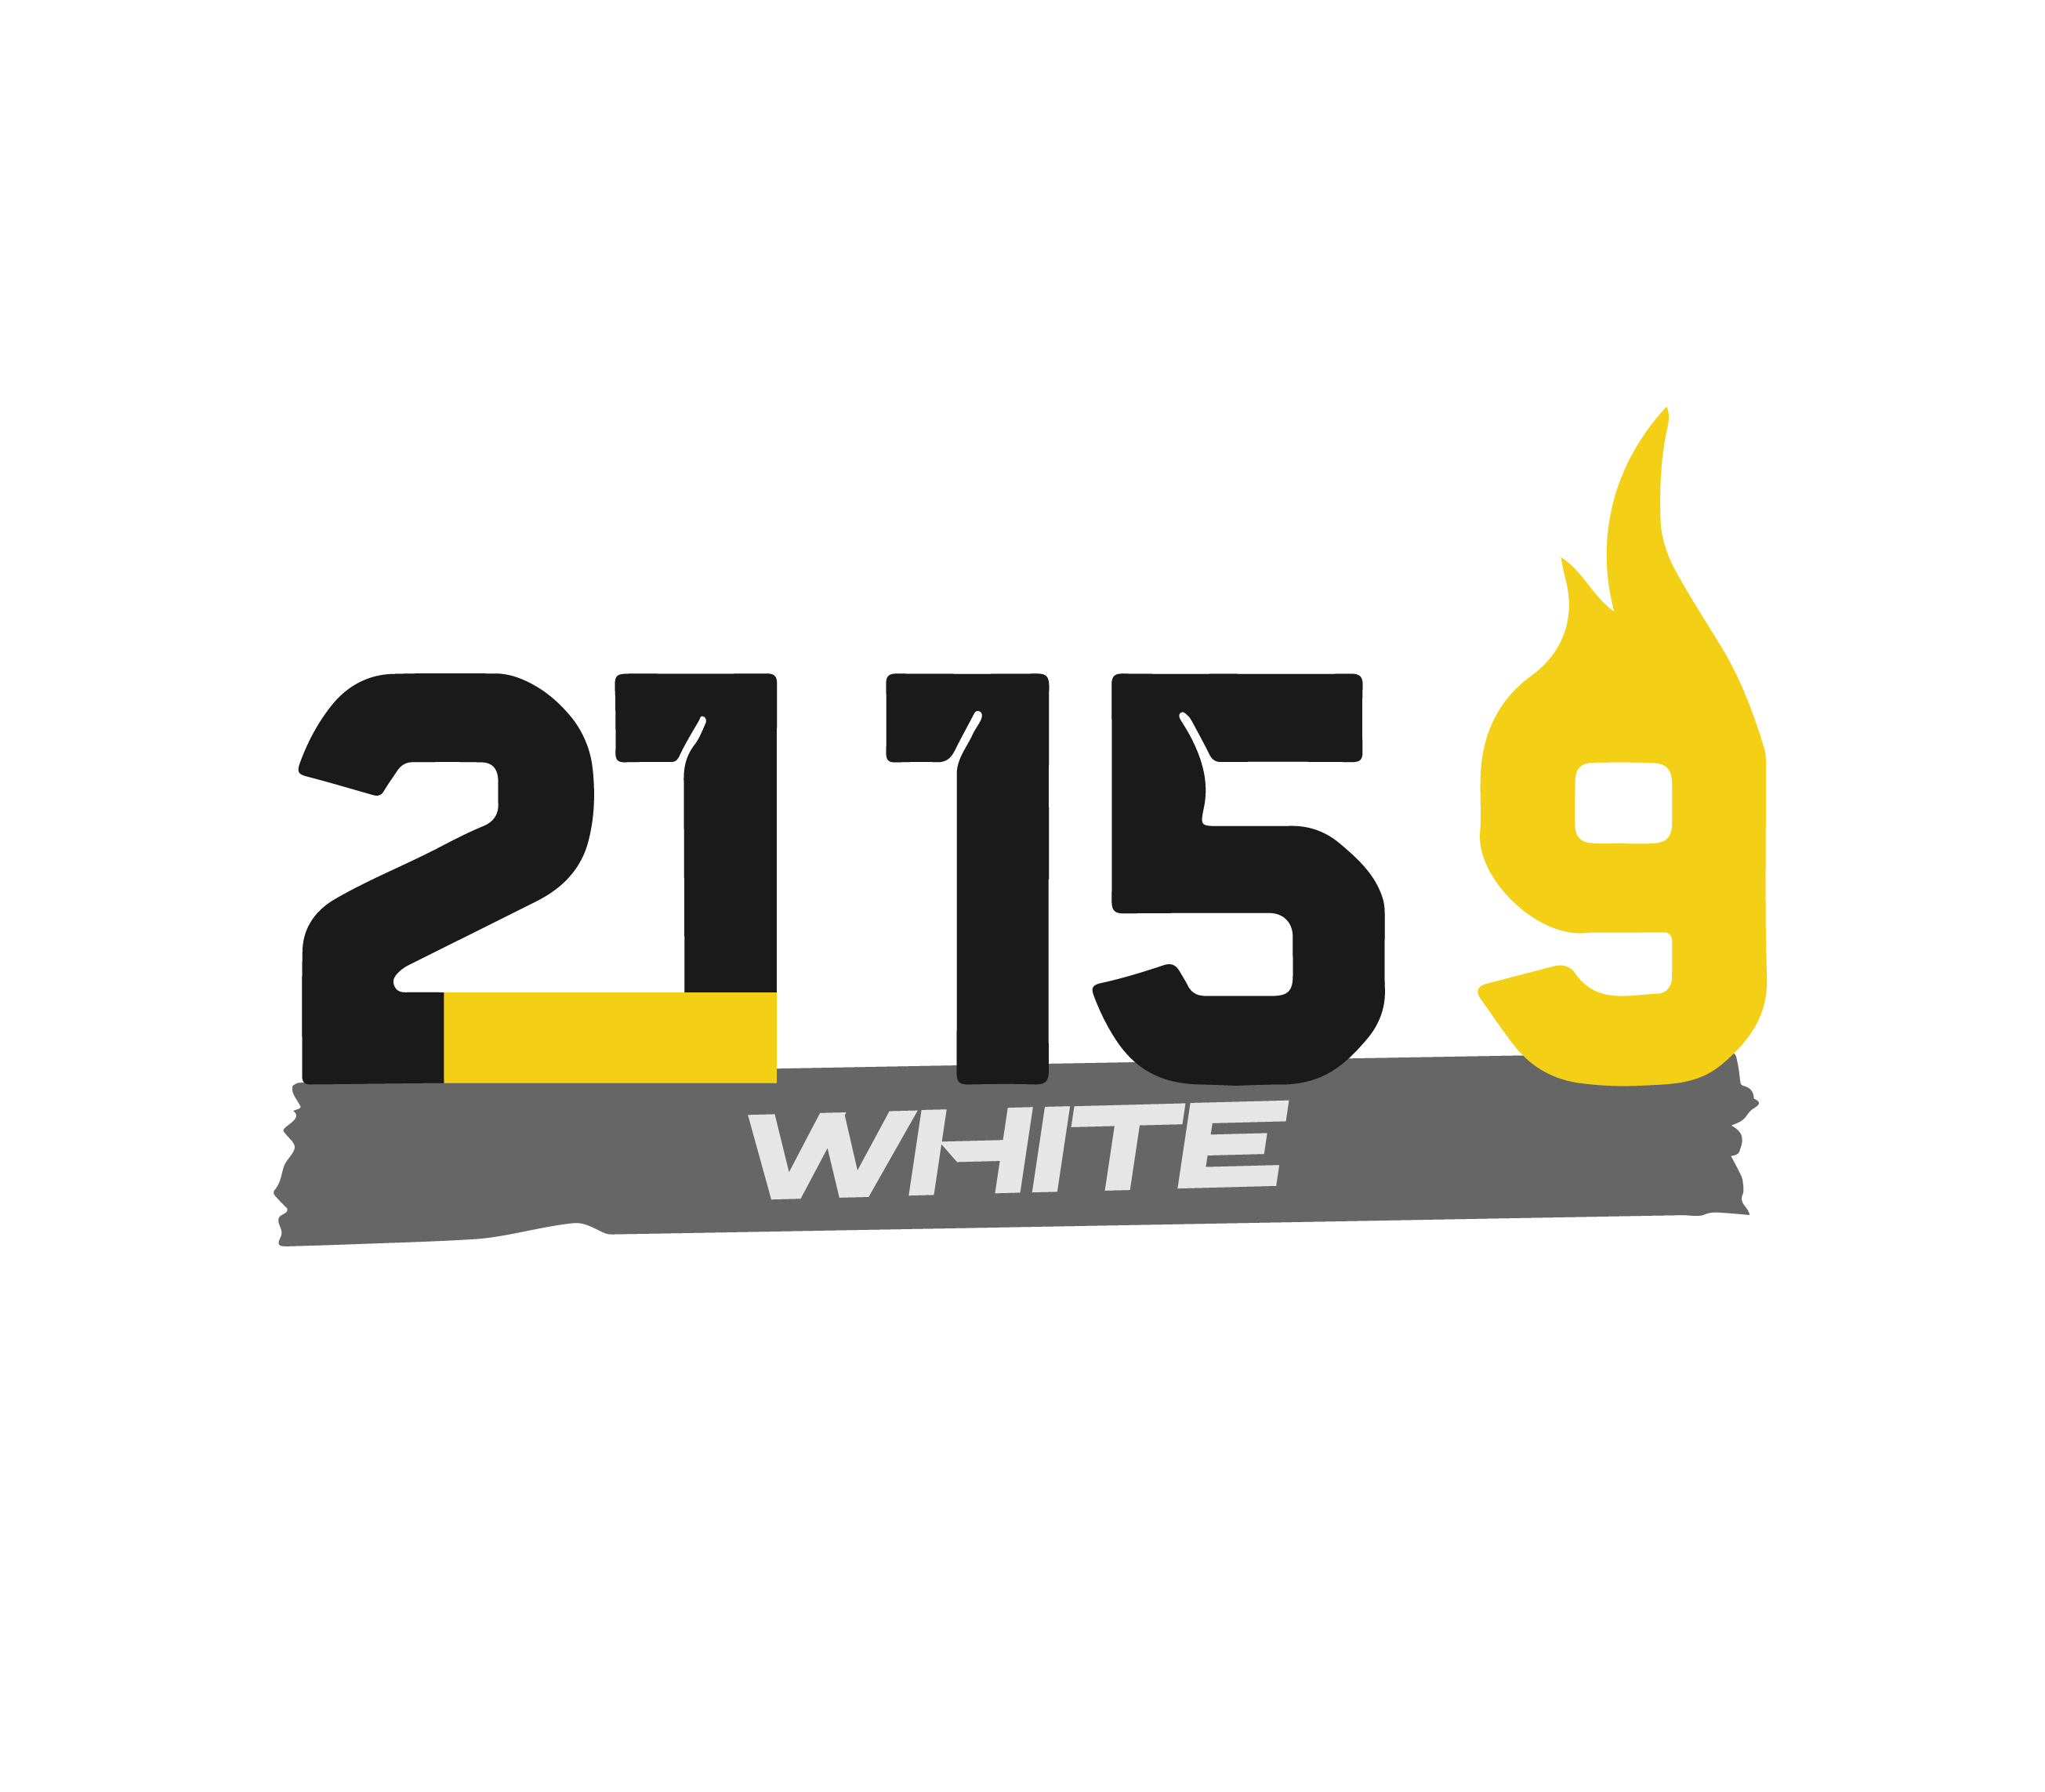 Logo 21 15 9 white